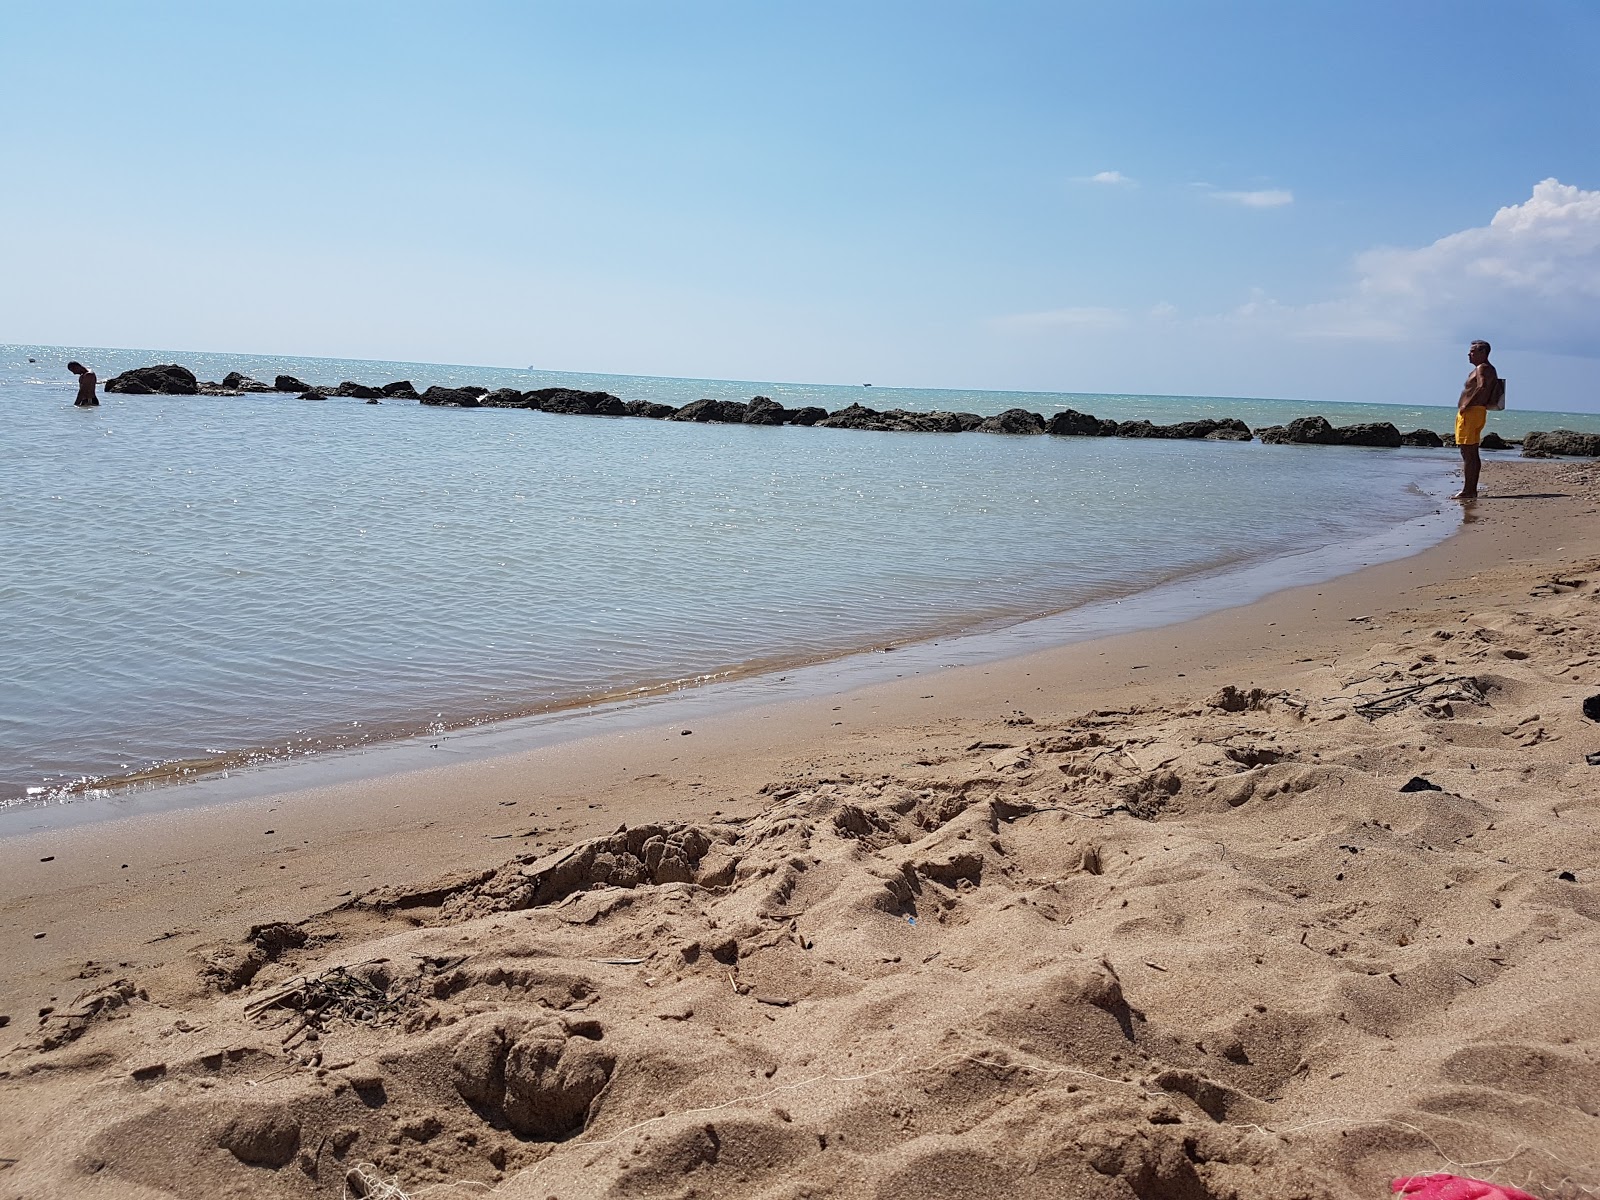 Fotografie cu Insonnia beach - locul popular printre cunoscătorii de relaxare